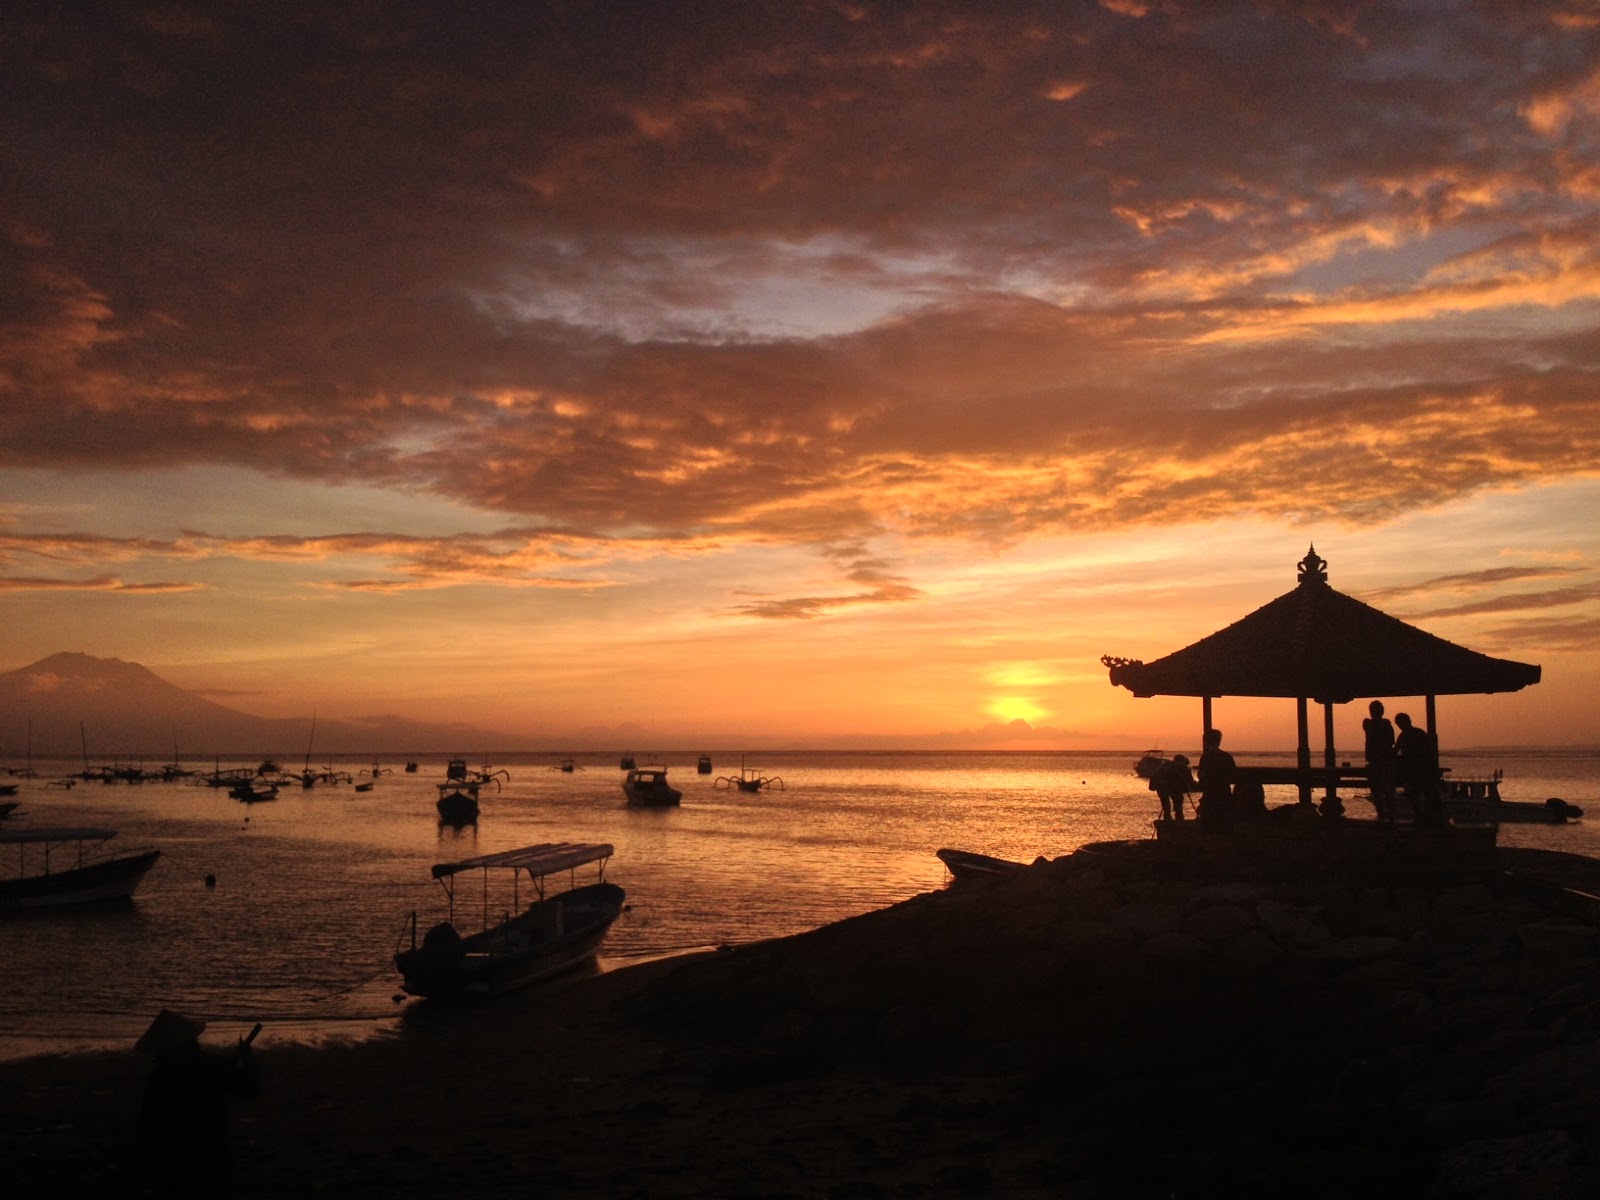 lesGOtravel: Sanur Beach Bali